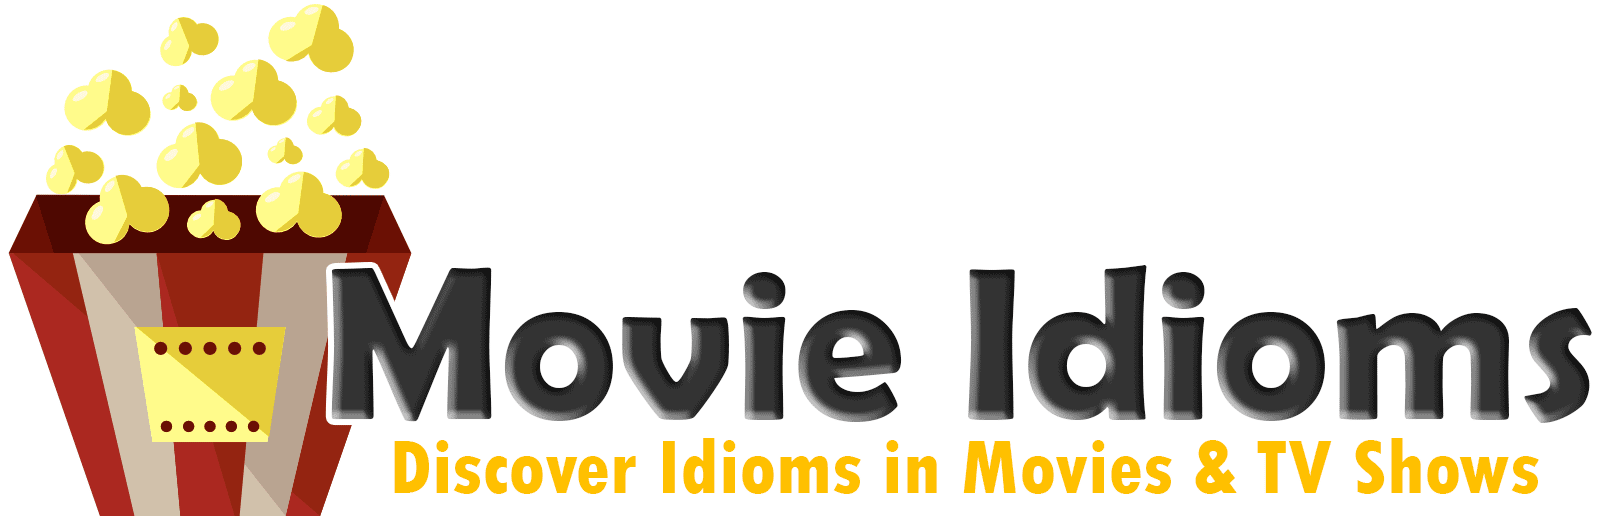 Movie Idioms